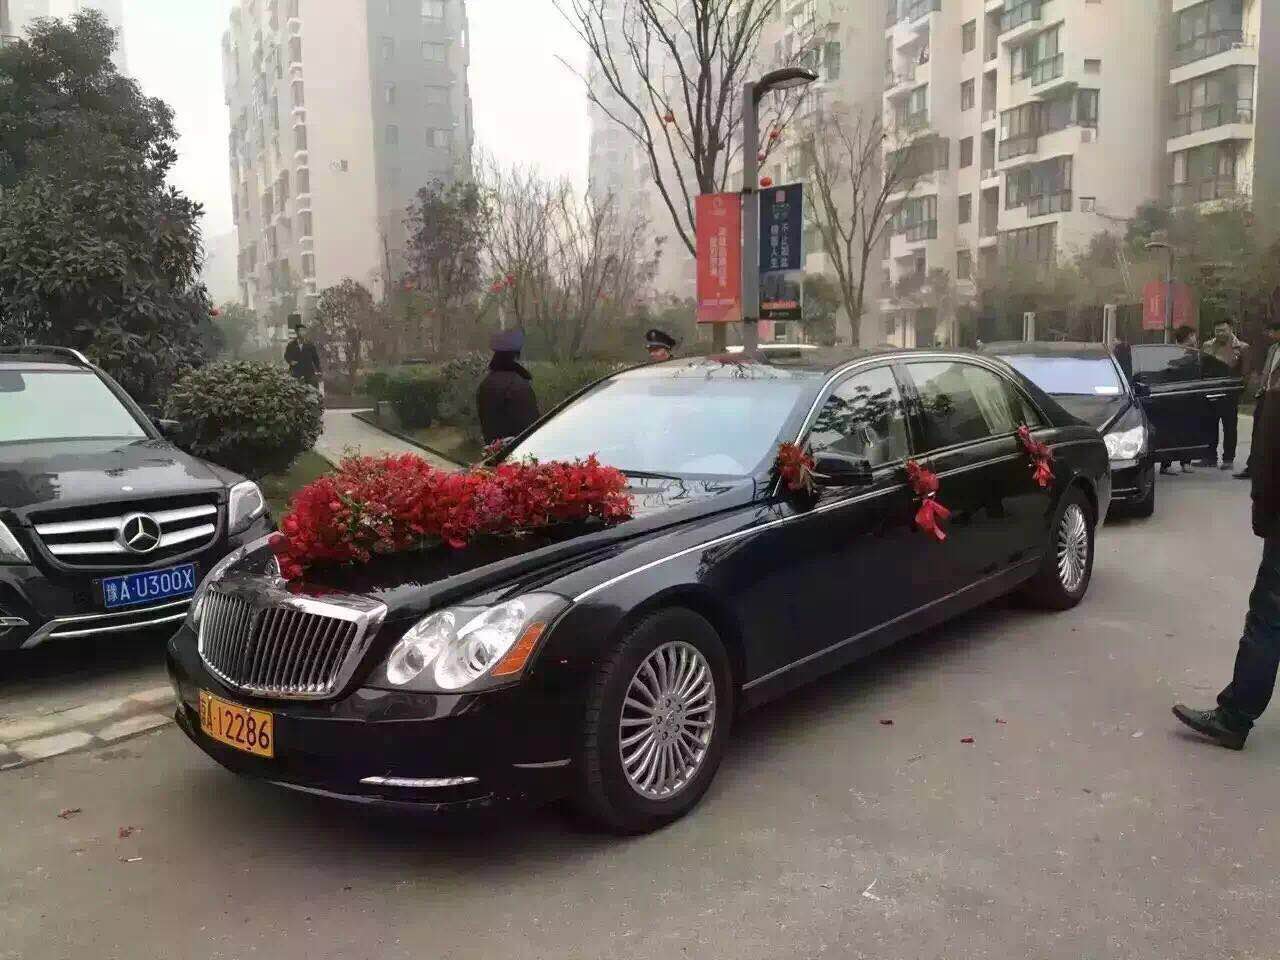 北京租车公司